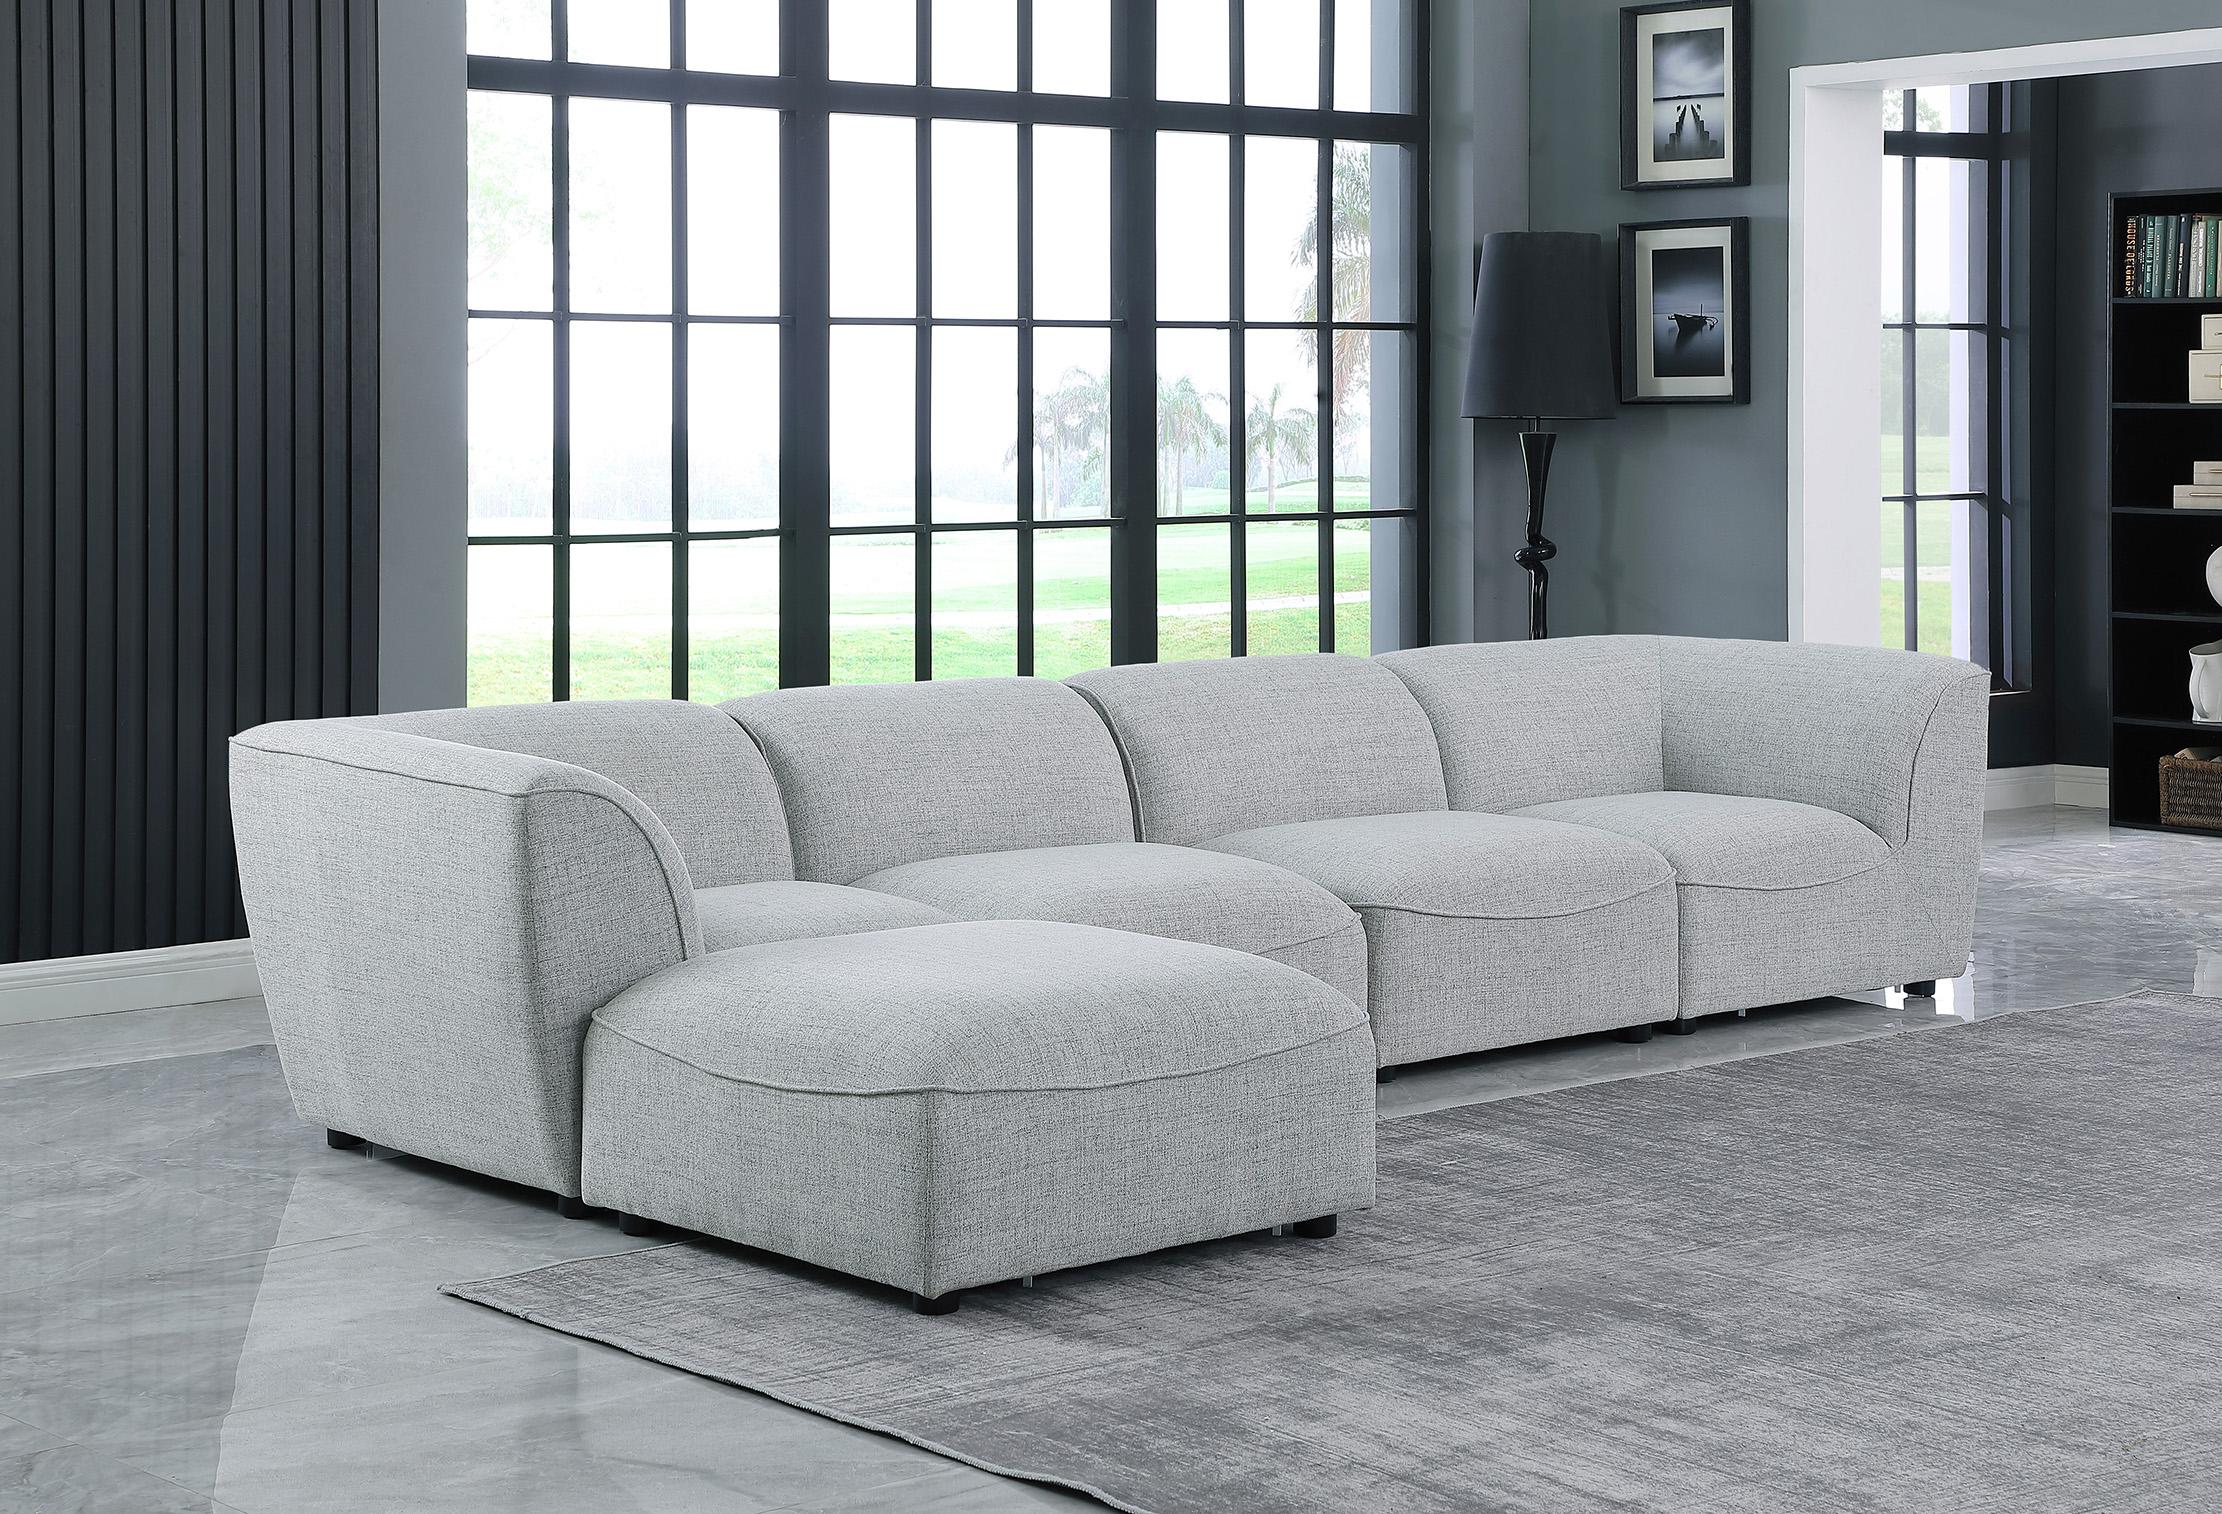 

    
Meridian Furniture MIRAMAR 683Grey-Sec5A Modular Sectional Sofa Gray 683Grey-Sec5A
